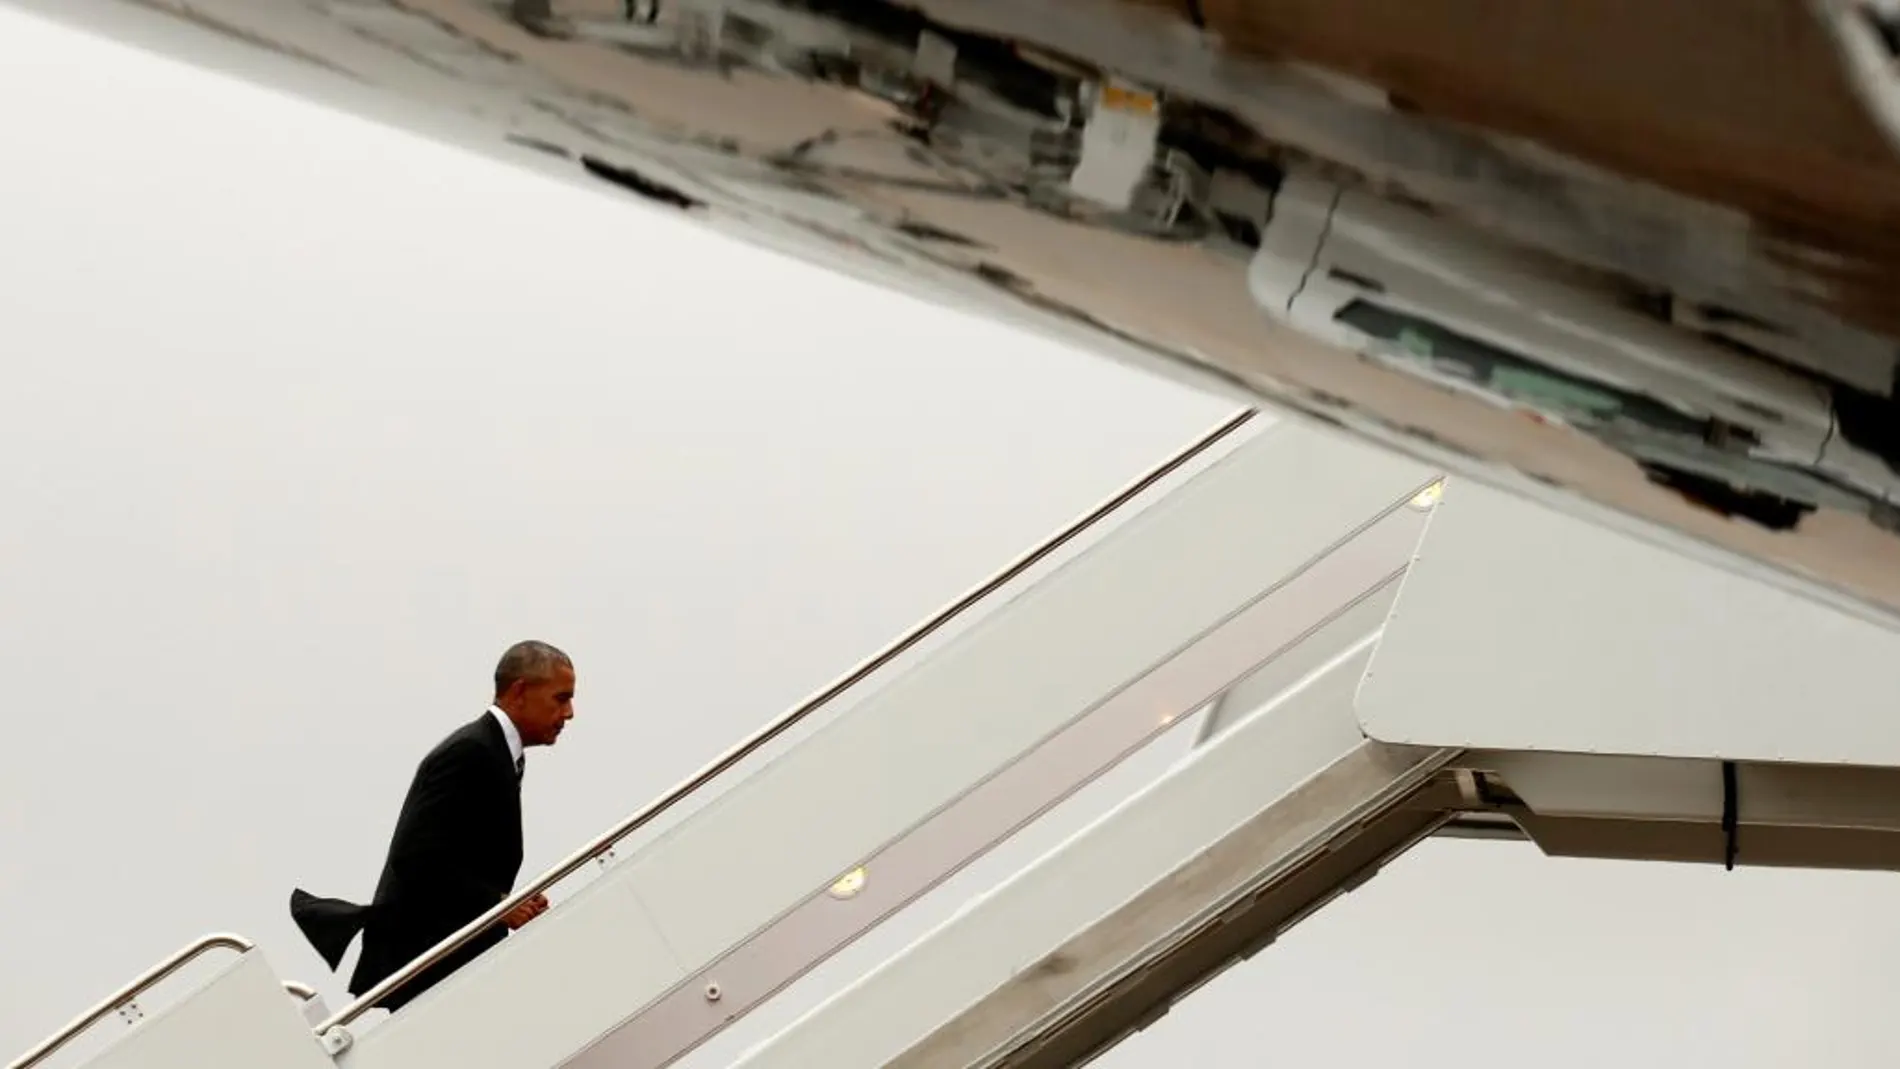 Obama sube al avión presidencial, el Air Force One, en Washington, camino de israel para el funeral de estado por Simon Peres